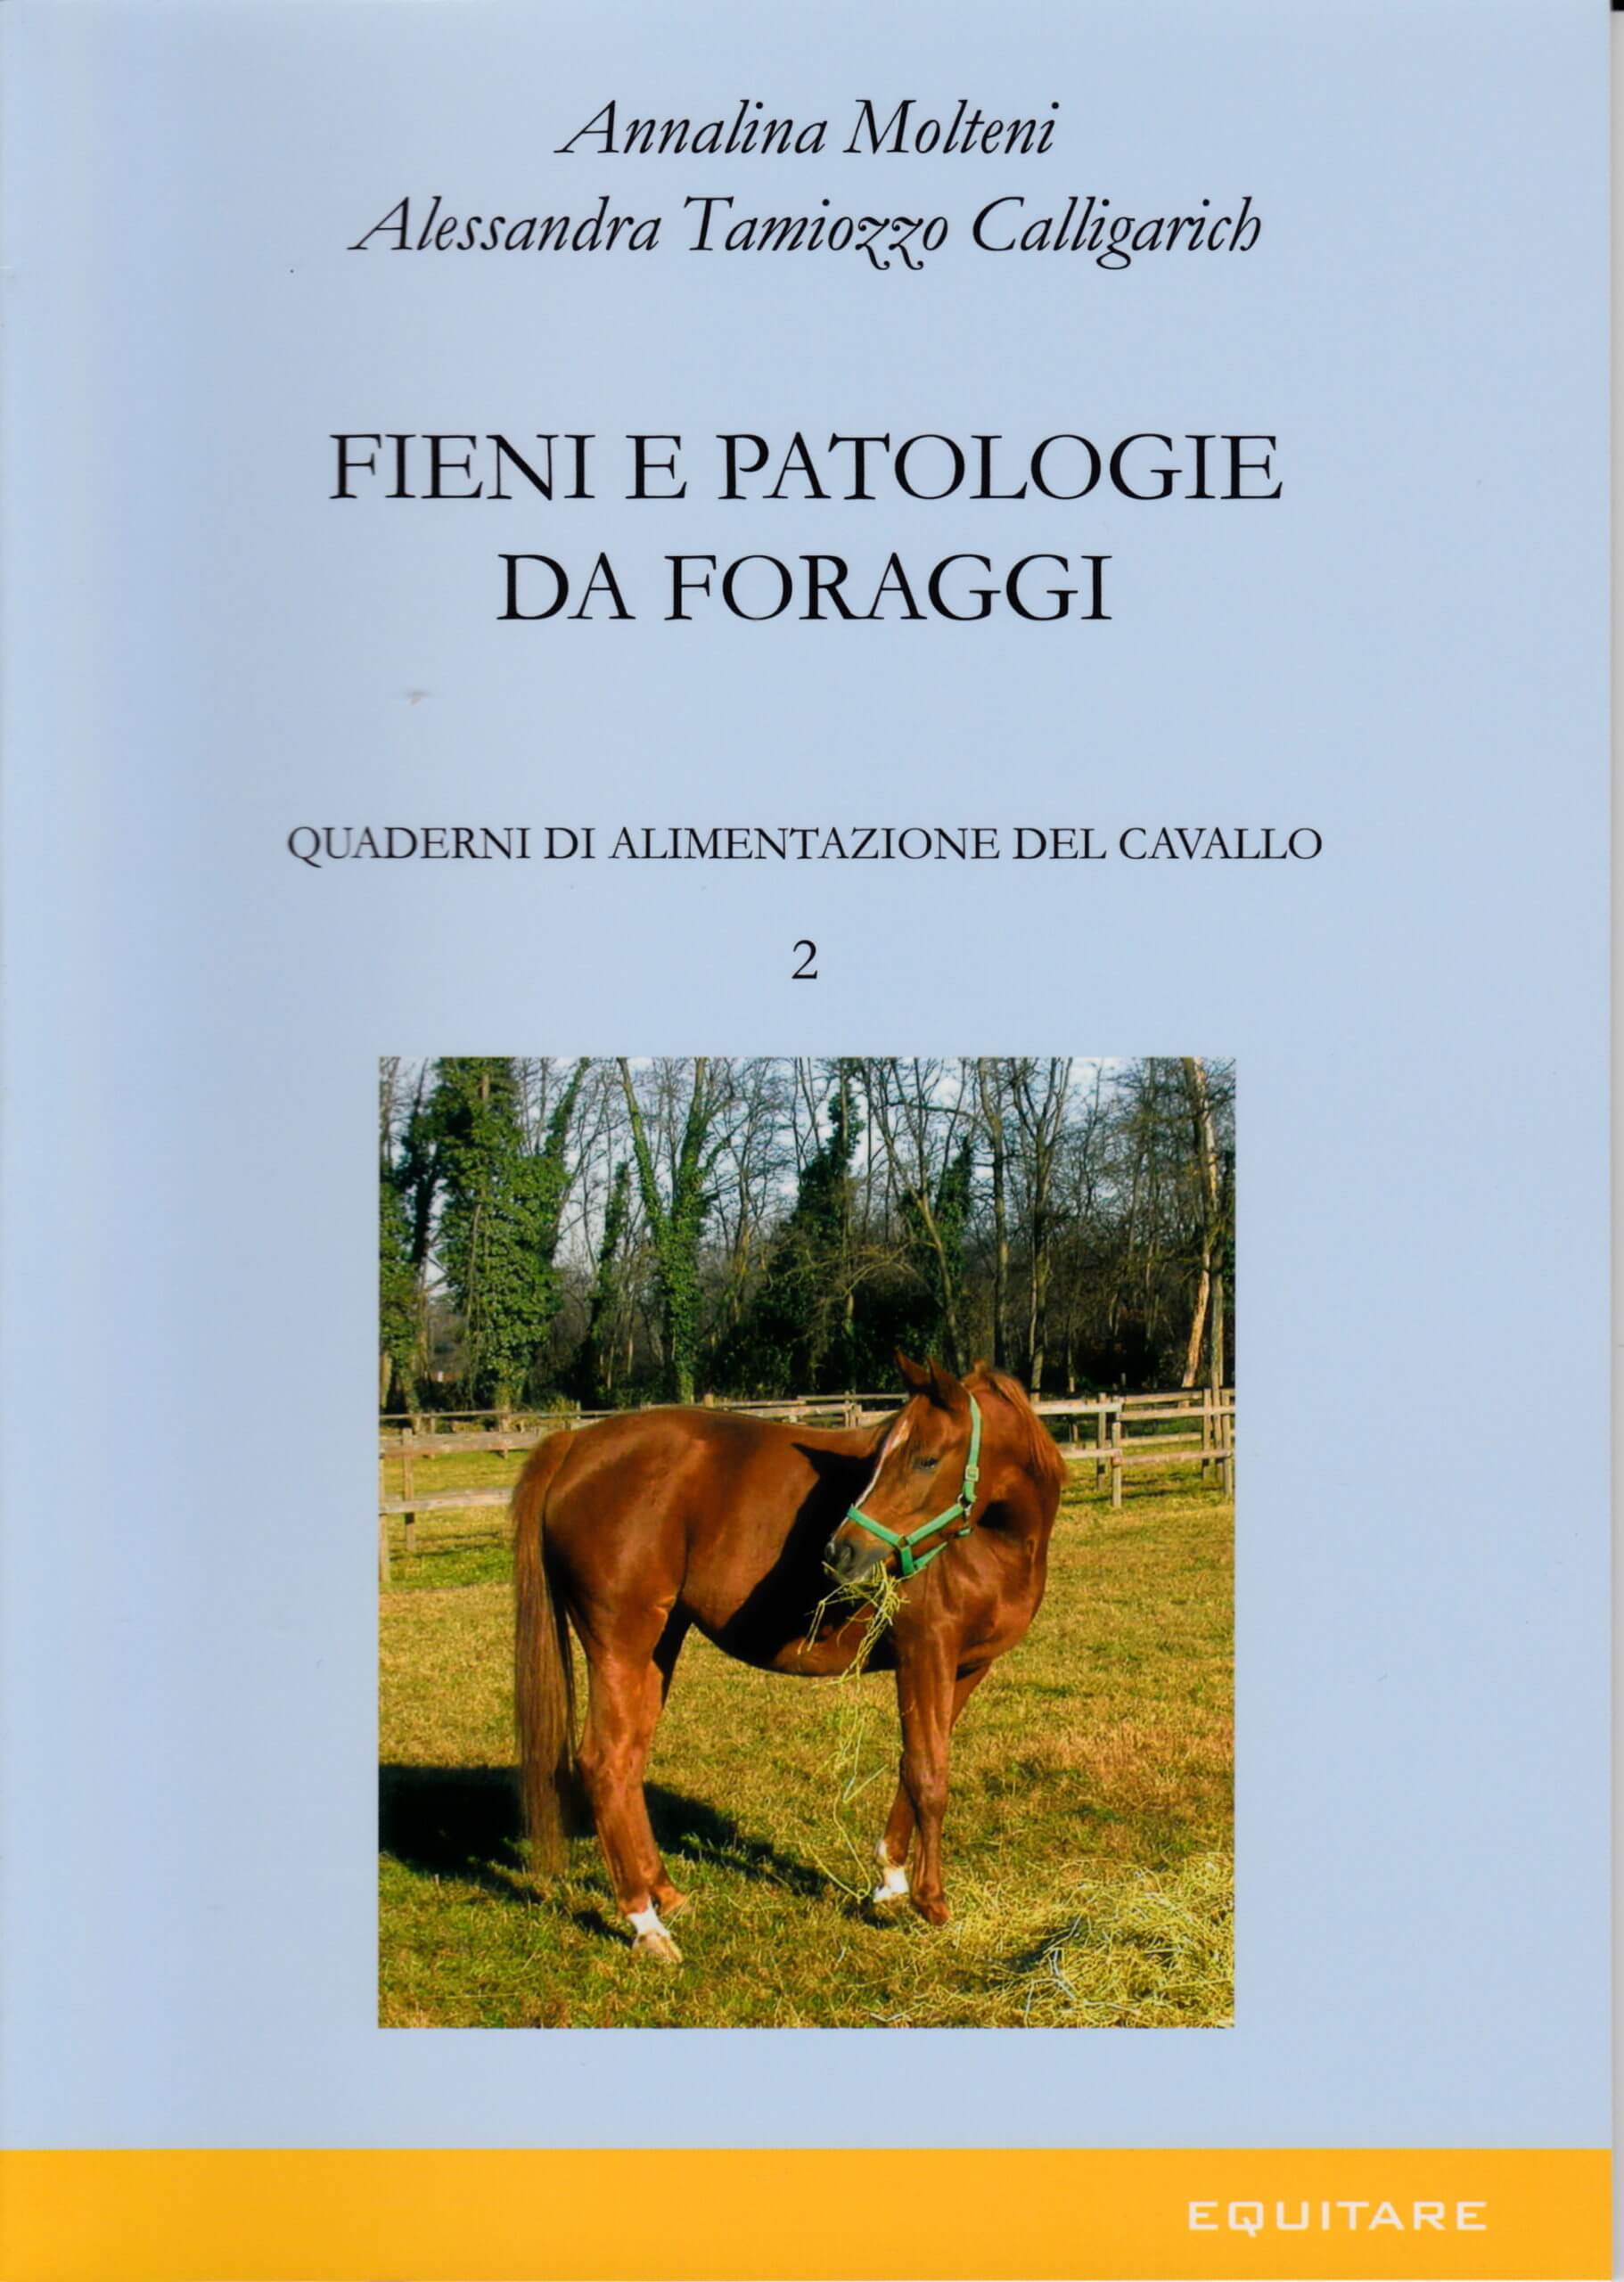 FIENI E PATOLOGIE DA FORAGGI - Annalina Molteni, Alessandra Tamiozzo Calligarich